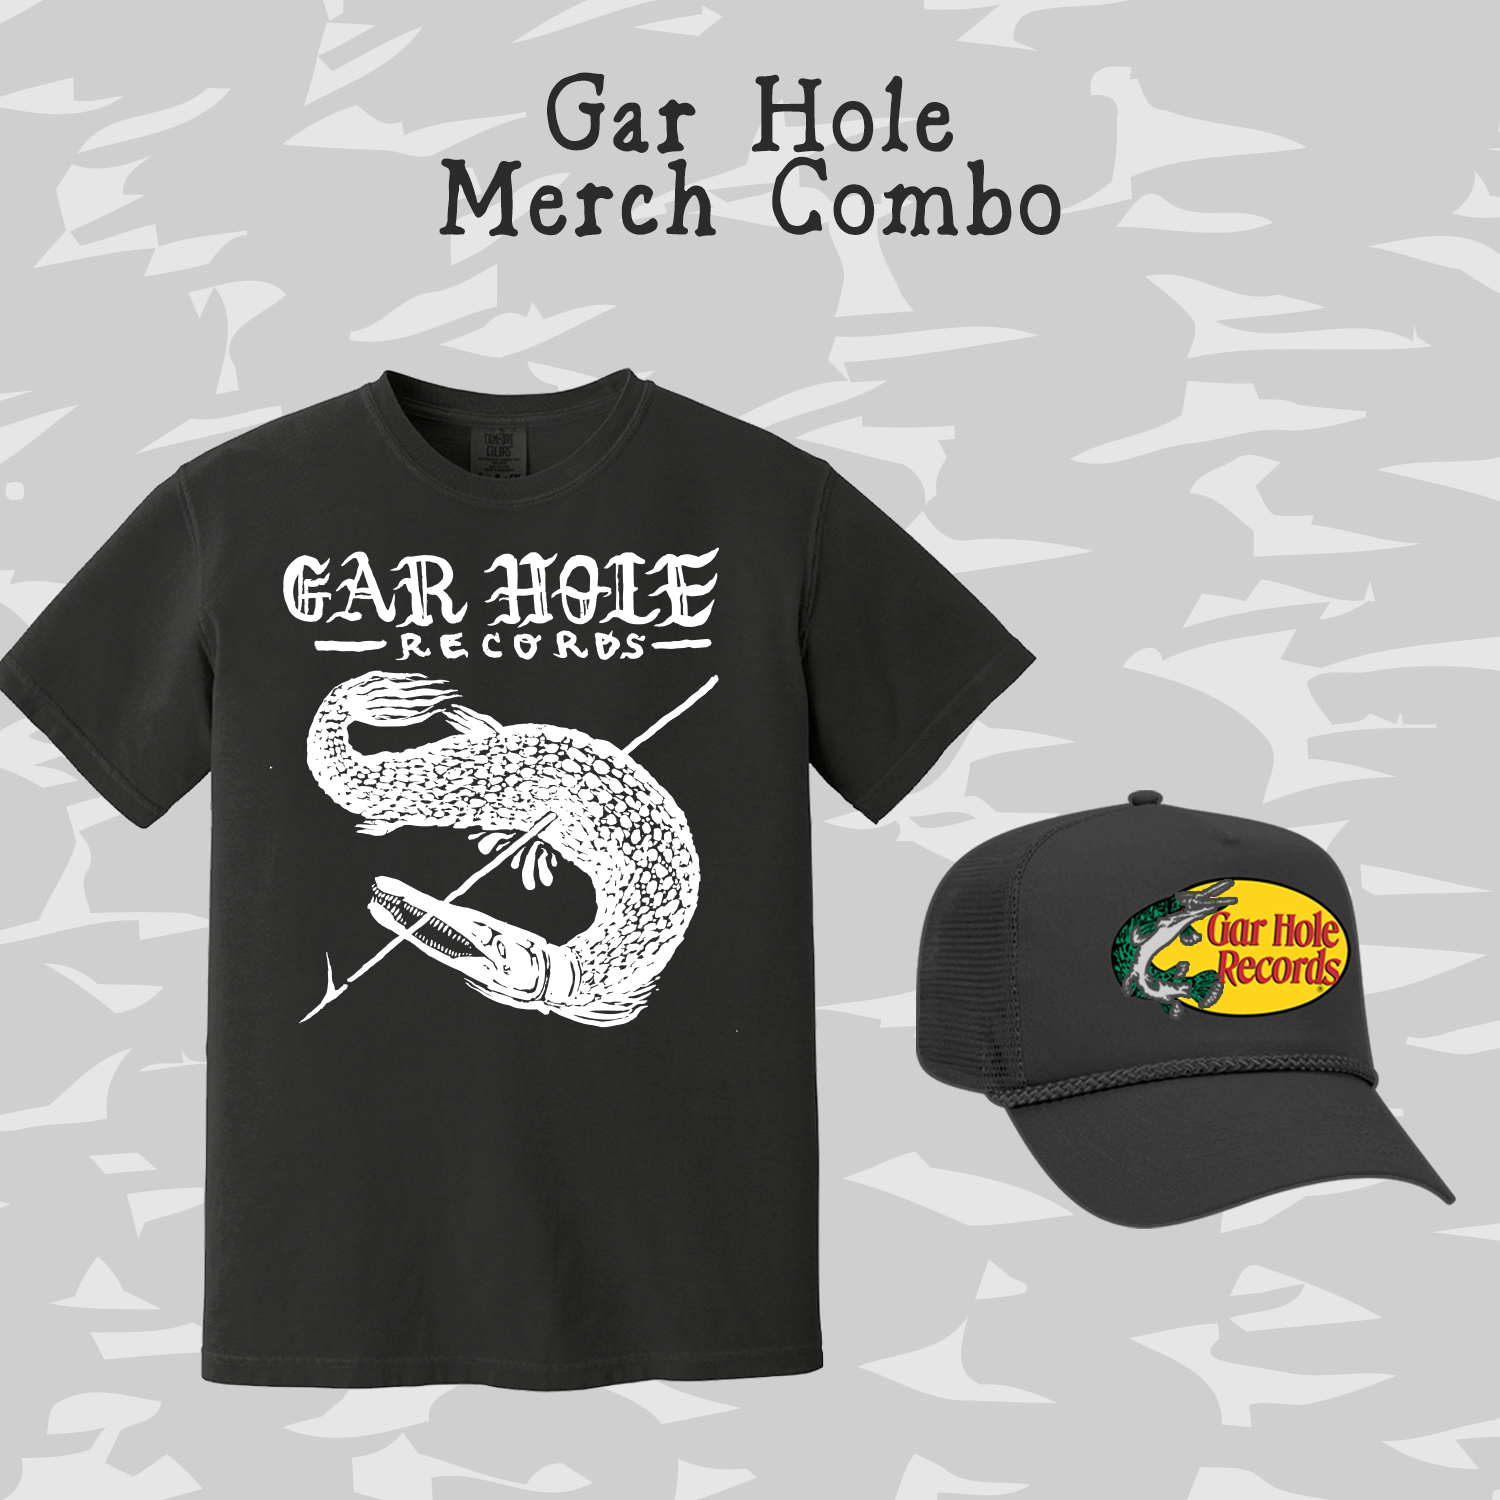 Gar Hole Merch Combo